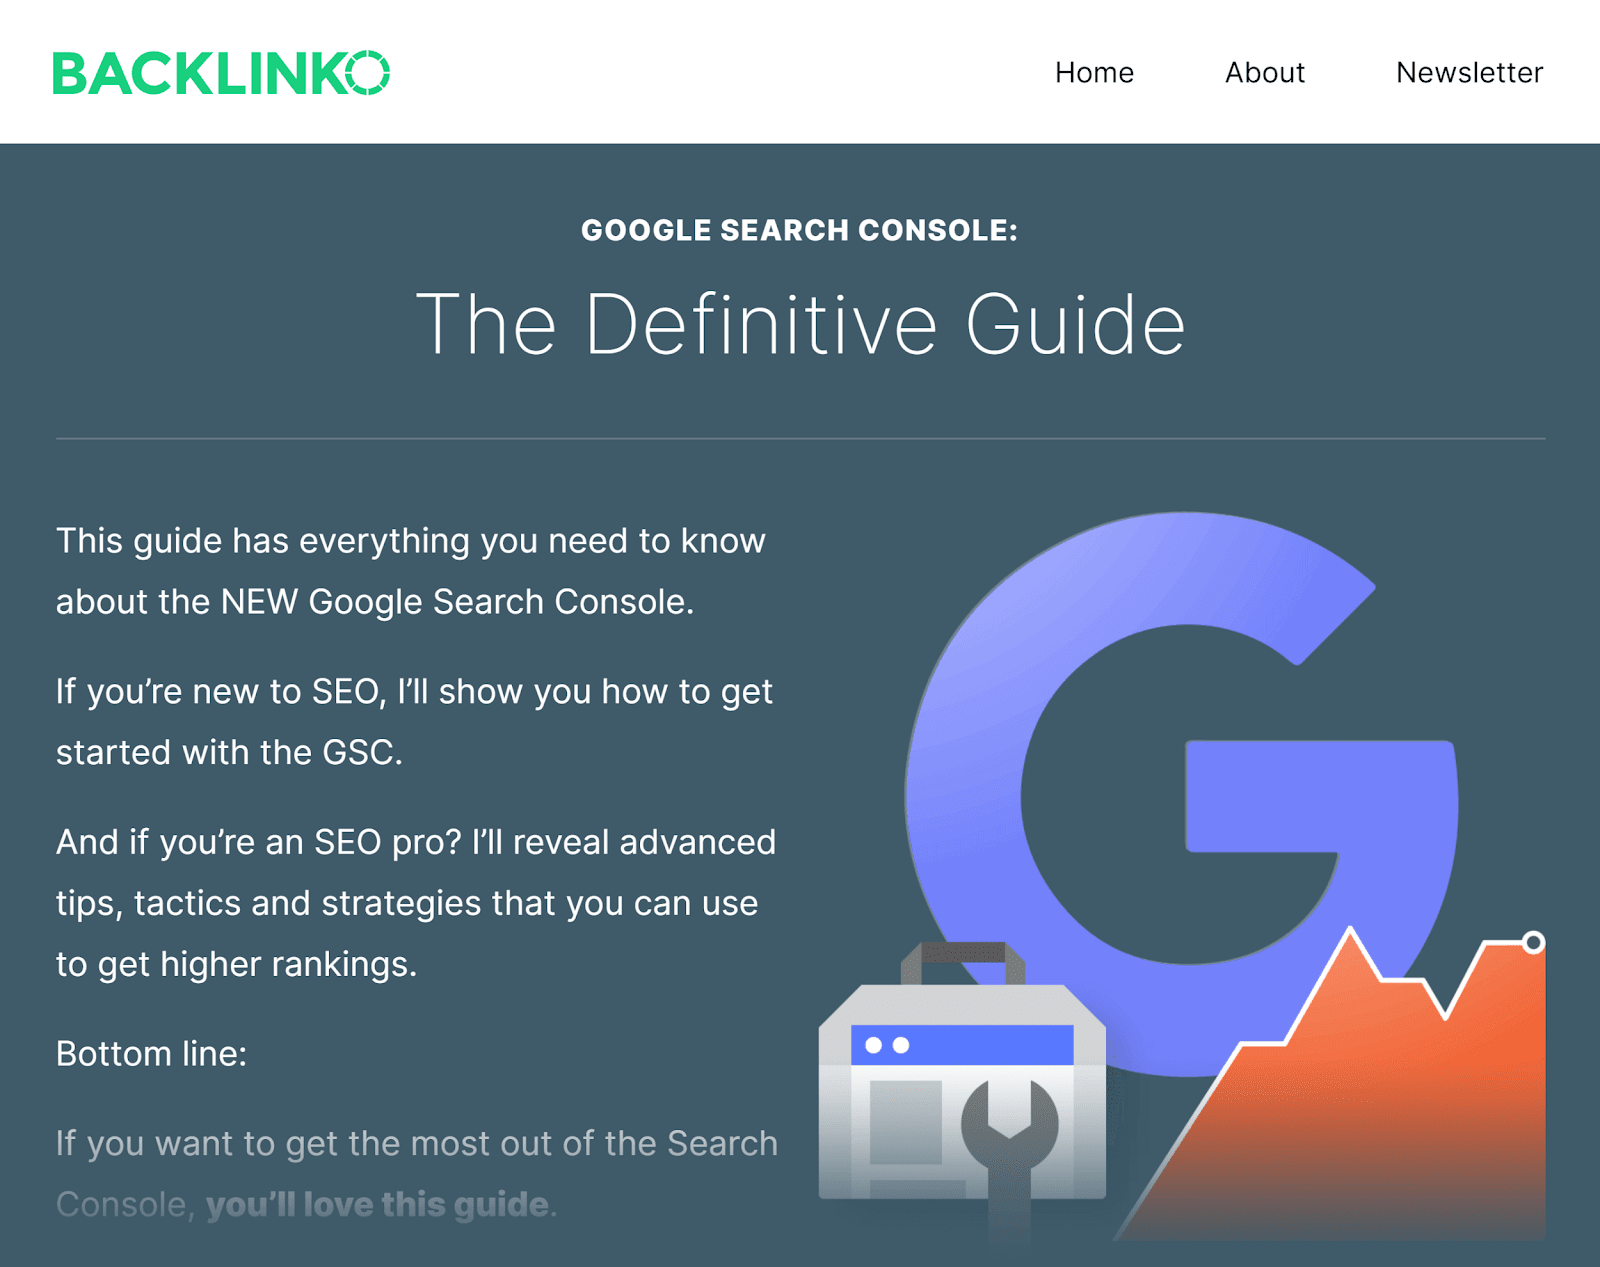 Backlinko - Hướng dẫn Google Search Console - Mẹo tiếp thị nội dung  